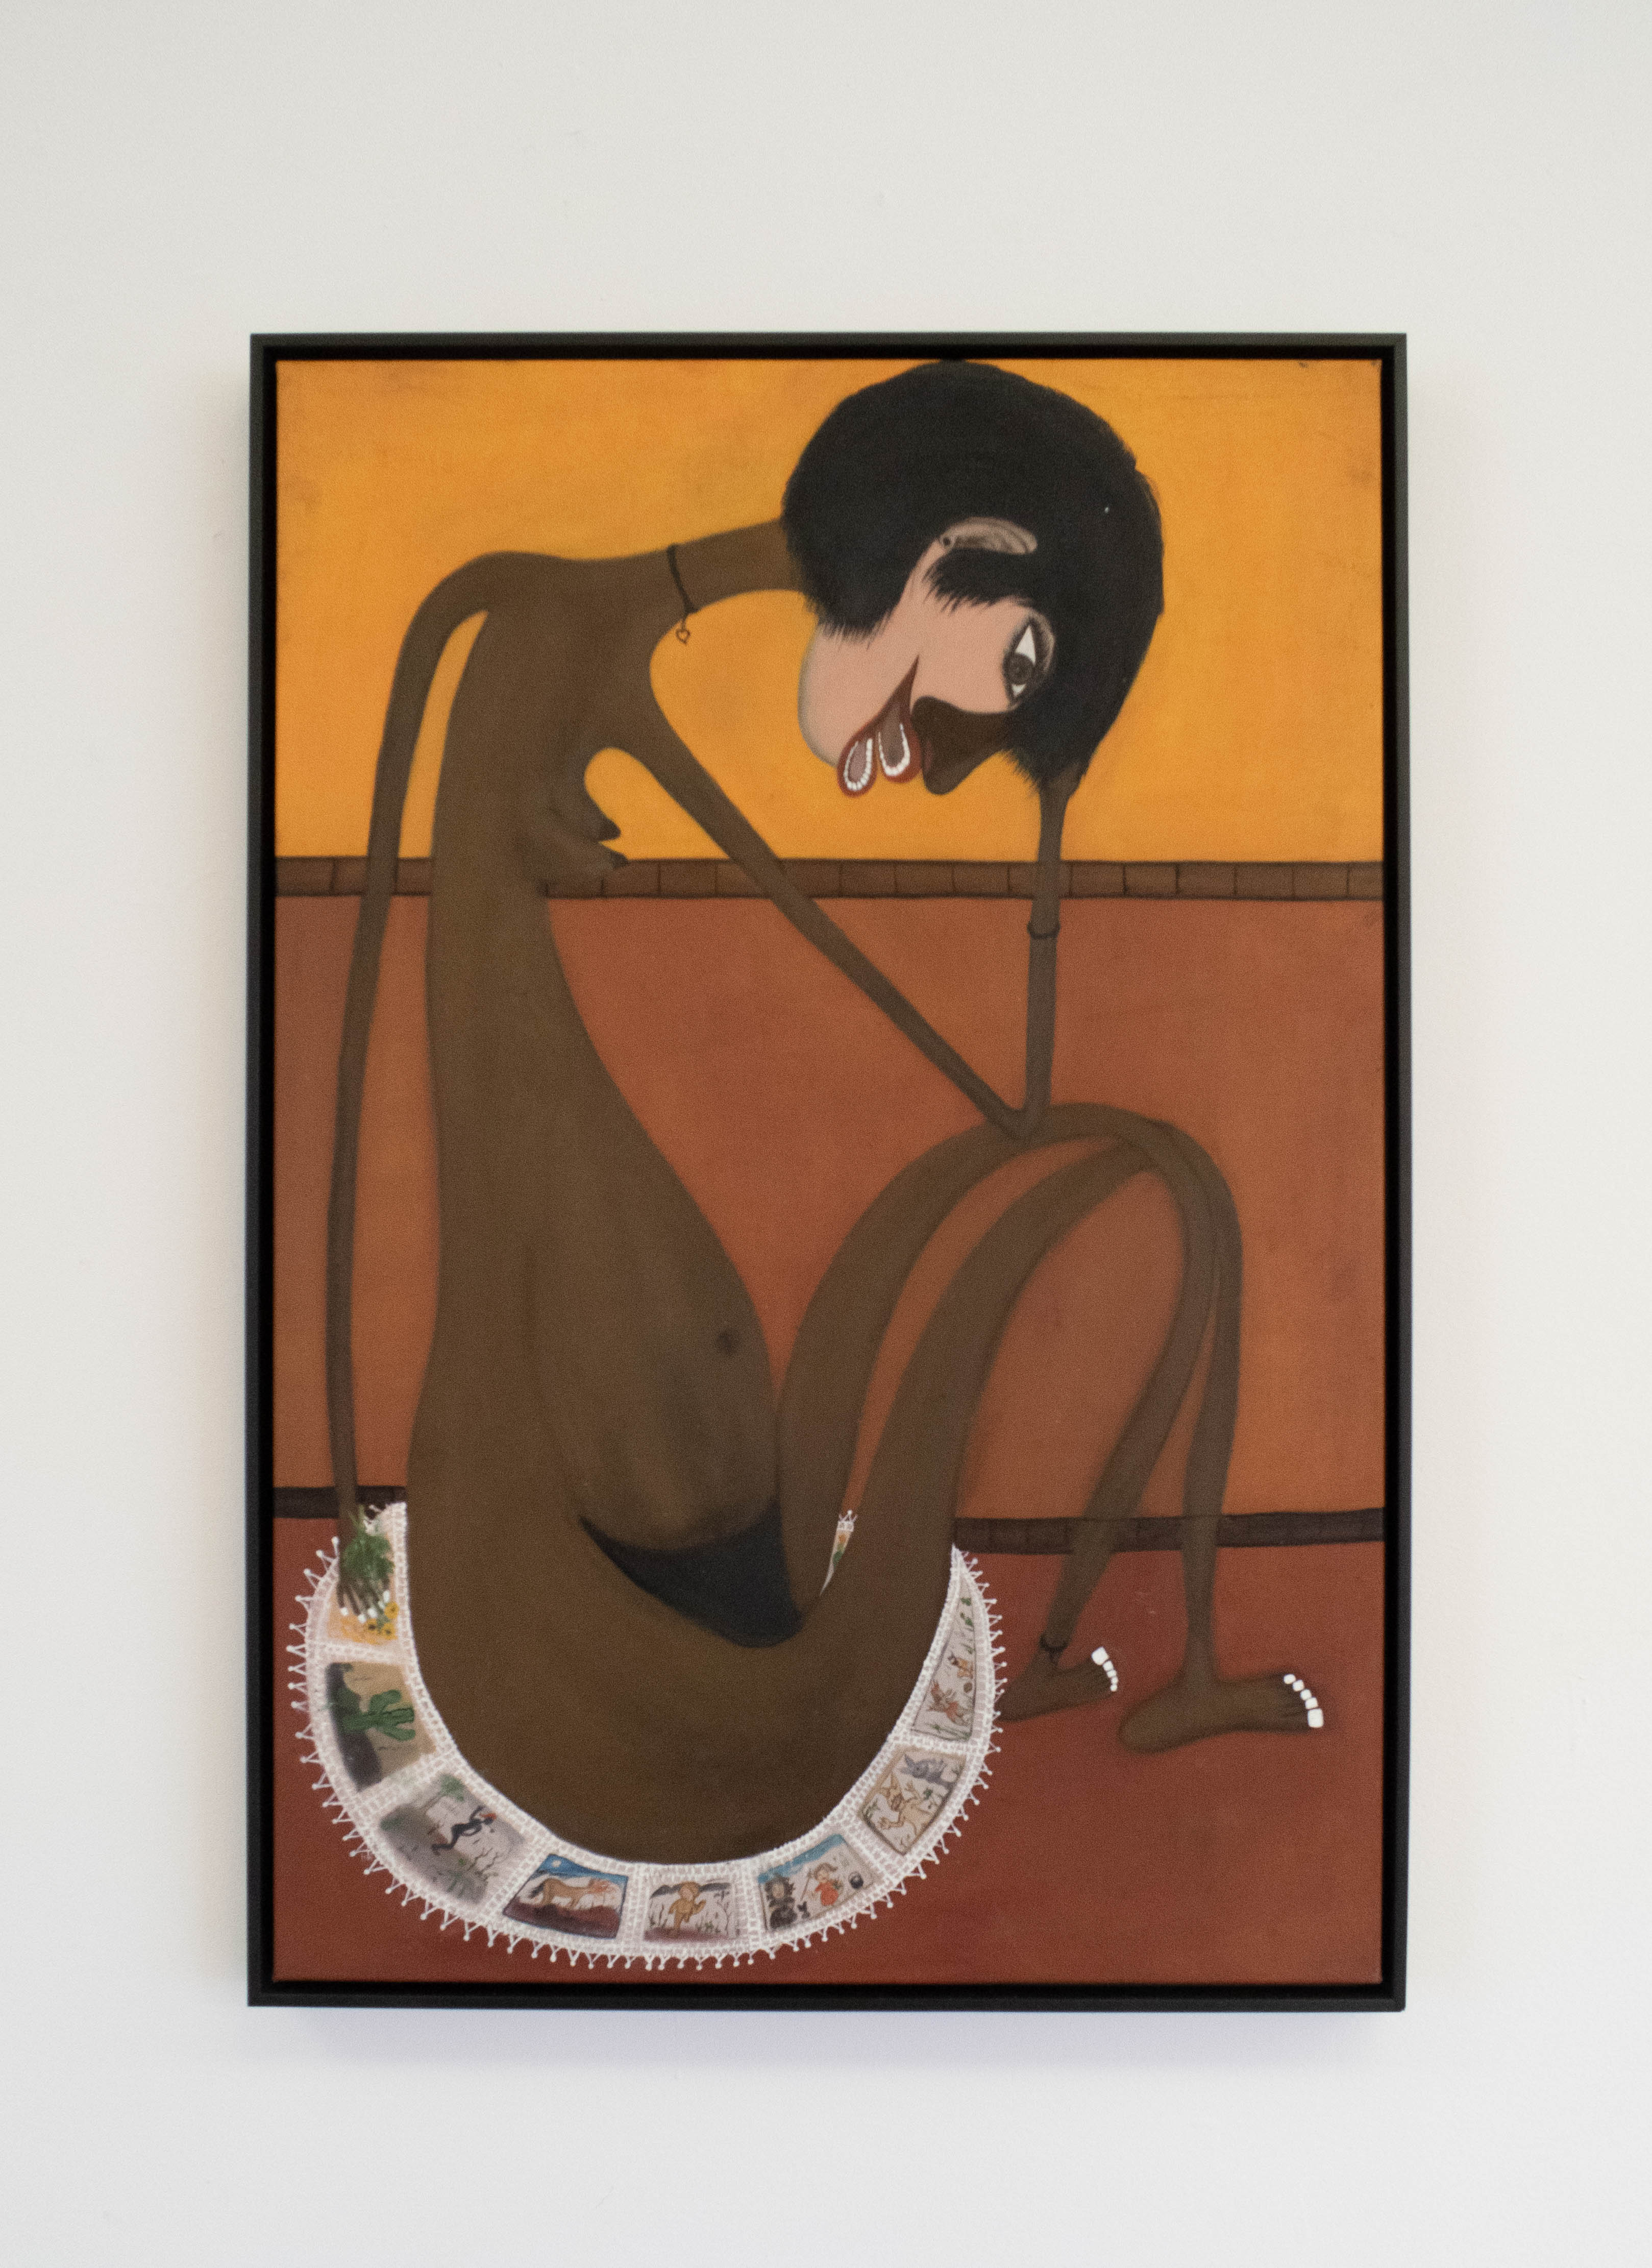 Nilda Neves, Caipora Filha, Acrílica sobre tela, 90 x 63 cm, 2019